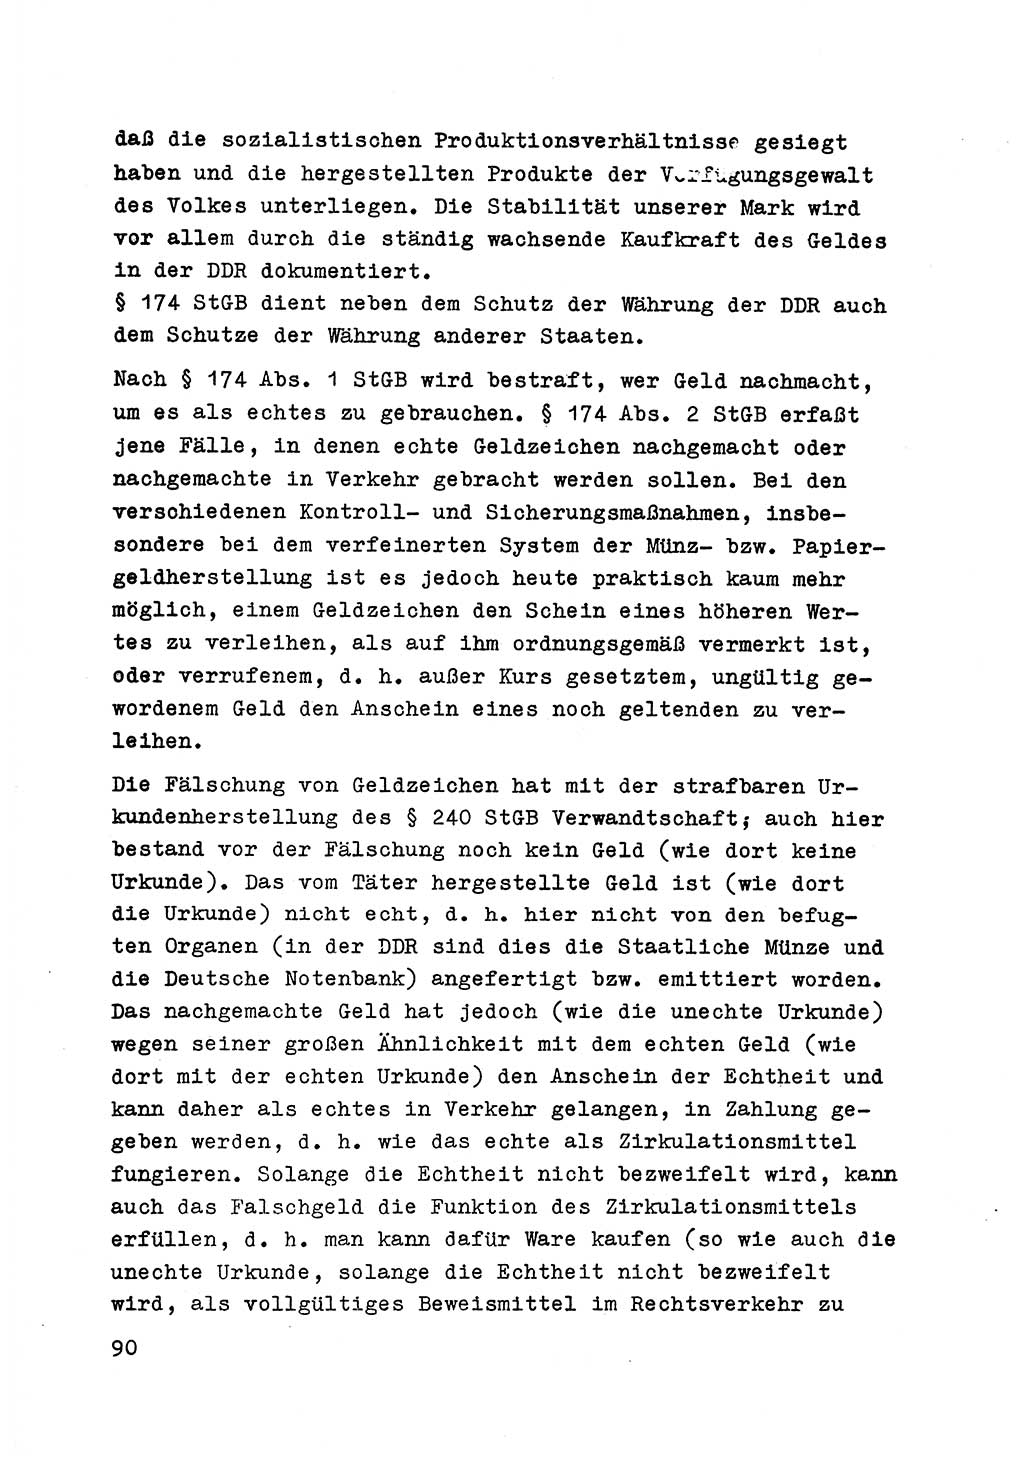 Strafrecht der DDR (Deutsche Demokratische Republik), Besonderer Teil, Lehrmaterial, Heft 6 1970, Seite 90 (Strafr. DDR BT Lehrmat. H. 6 1970, S. 90)